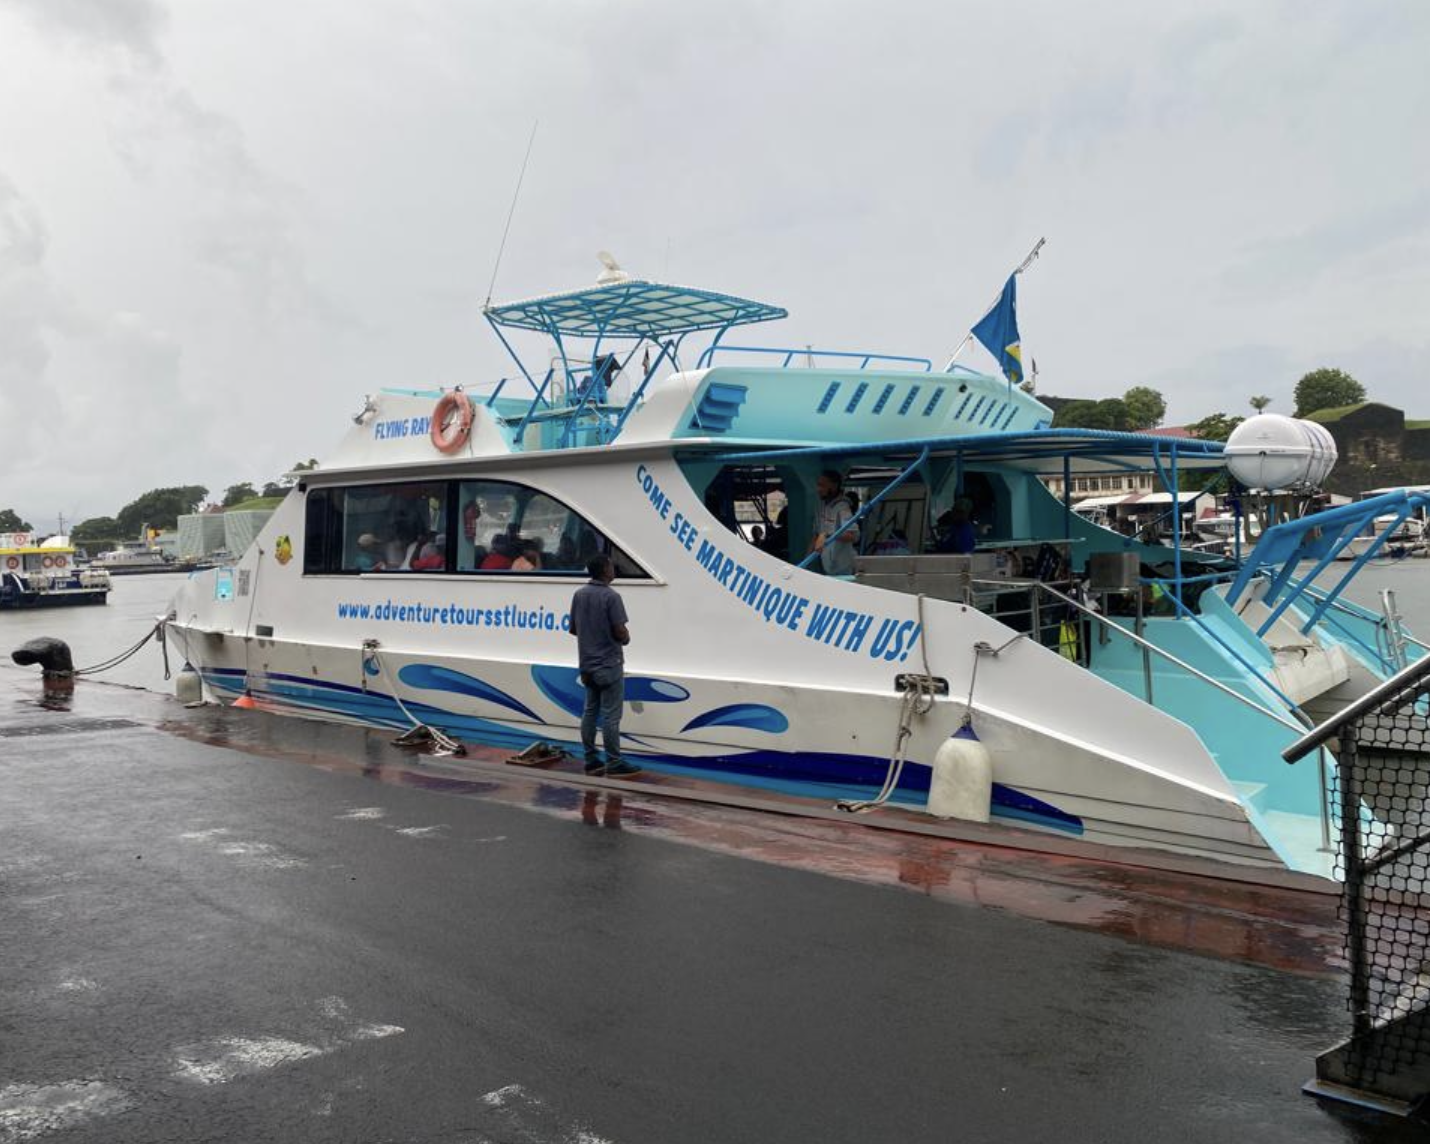     Tempête Philippe : un bateau d’excursion et 82 passagers accueillis en urgence en Martinique 

